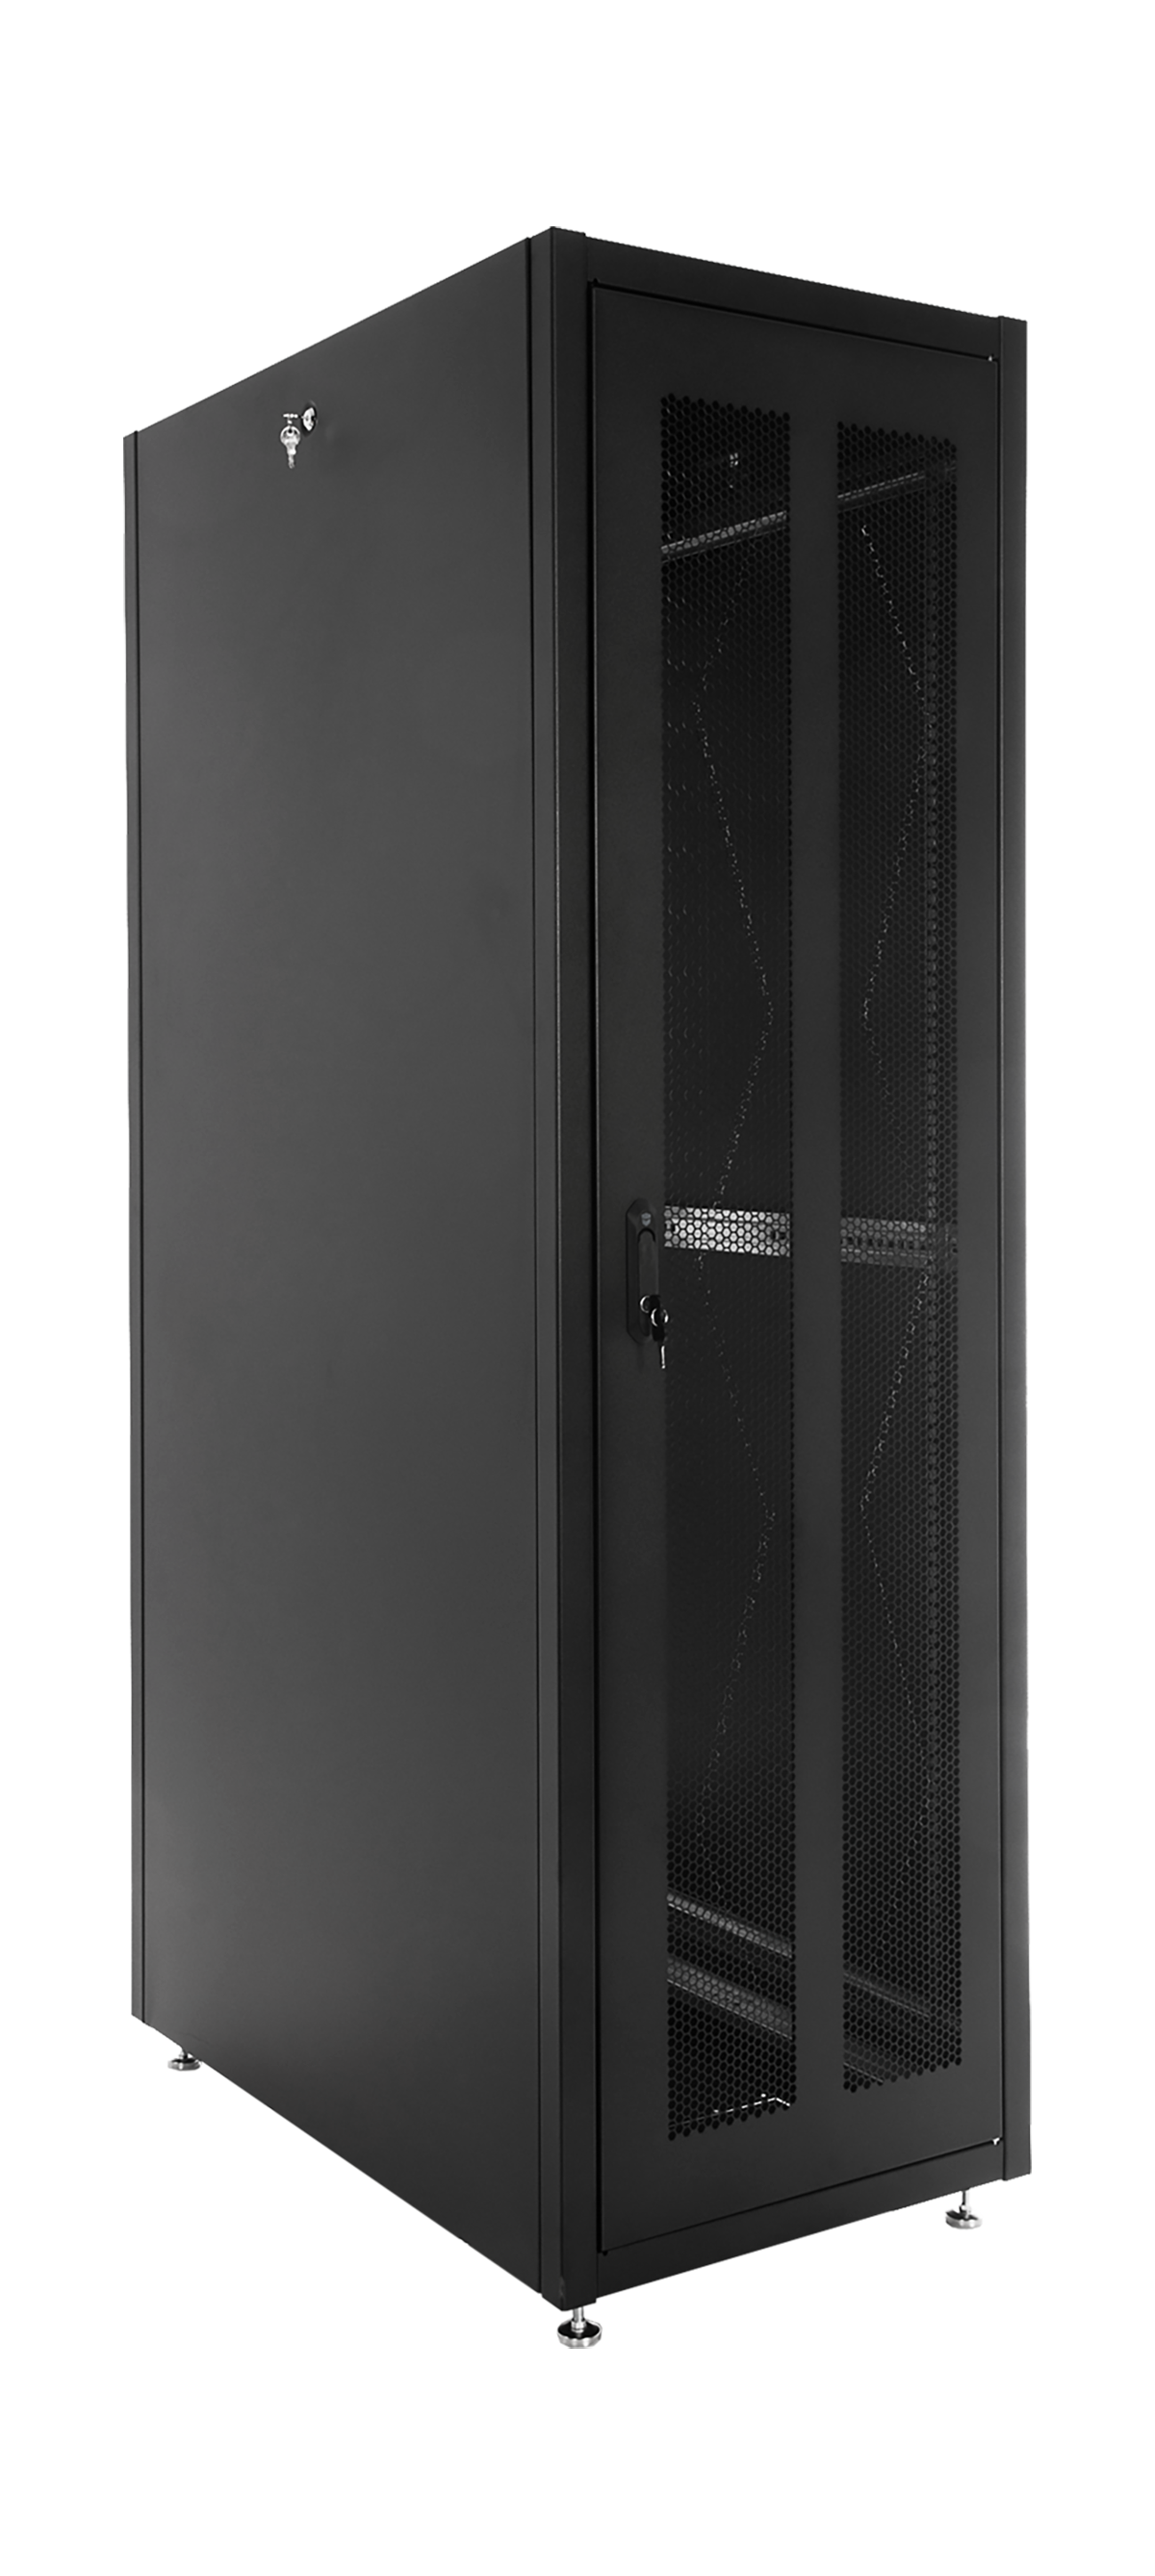 Шкаф телекоммуникационный напольный ЭКОНОМ 48U (600 × 600) дверь перфорированная 2 шт., цвет черный